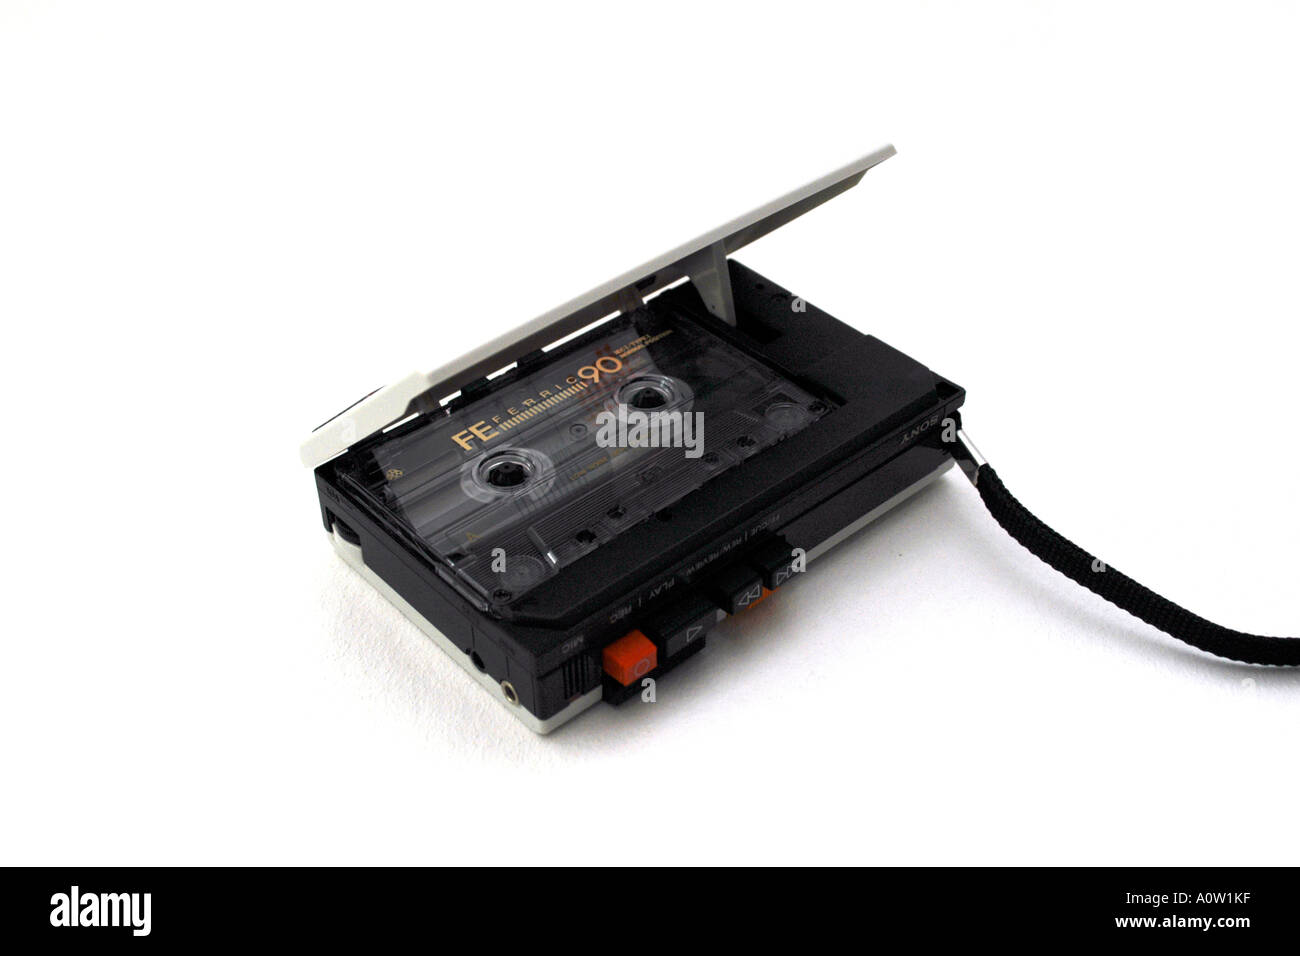 Sony dice adiós a sus reproductores Walkman de casete